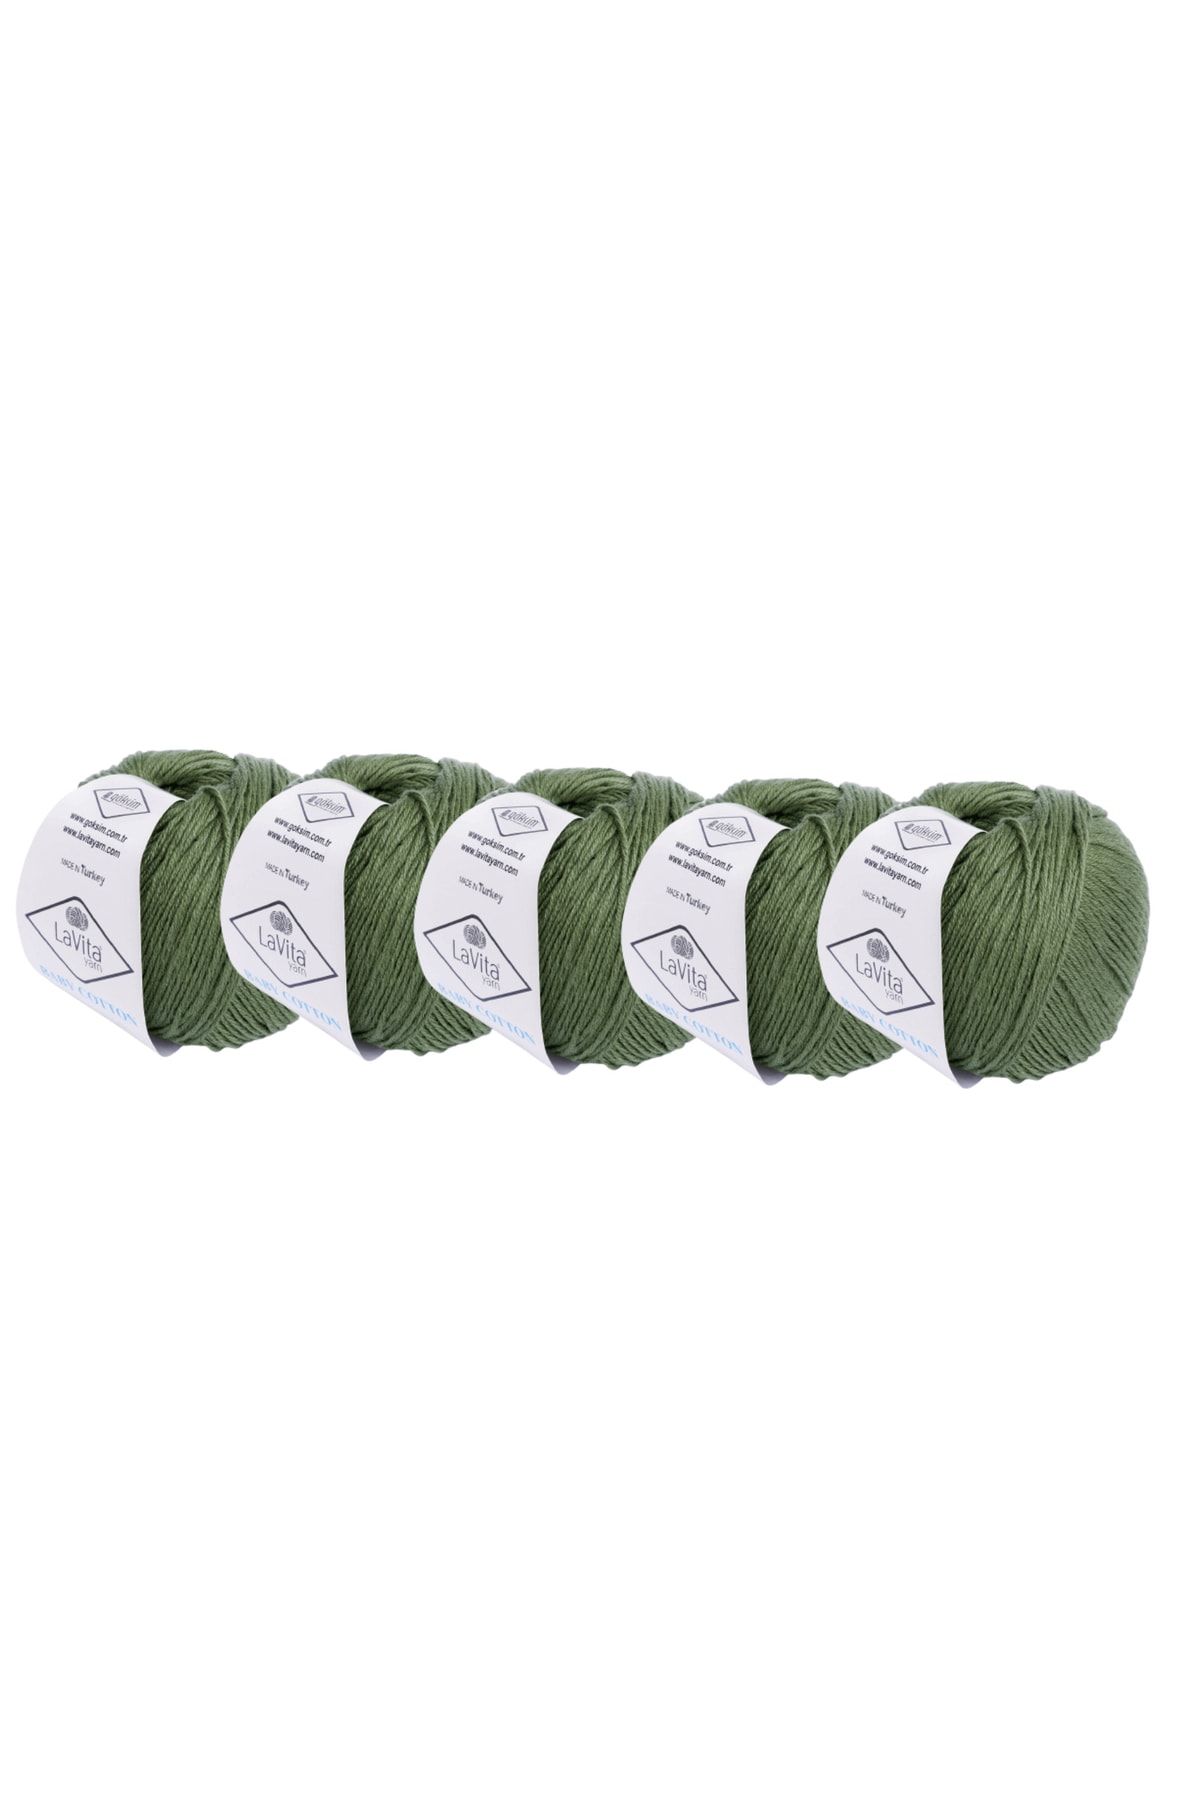 LaVita Yarn Baby Cotton 50 gr Amigurumi, Punch, El Örgü Ipi 5'li Paket Taka Yarn (GÖL YEŞİLİ-8118)